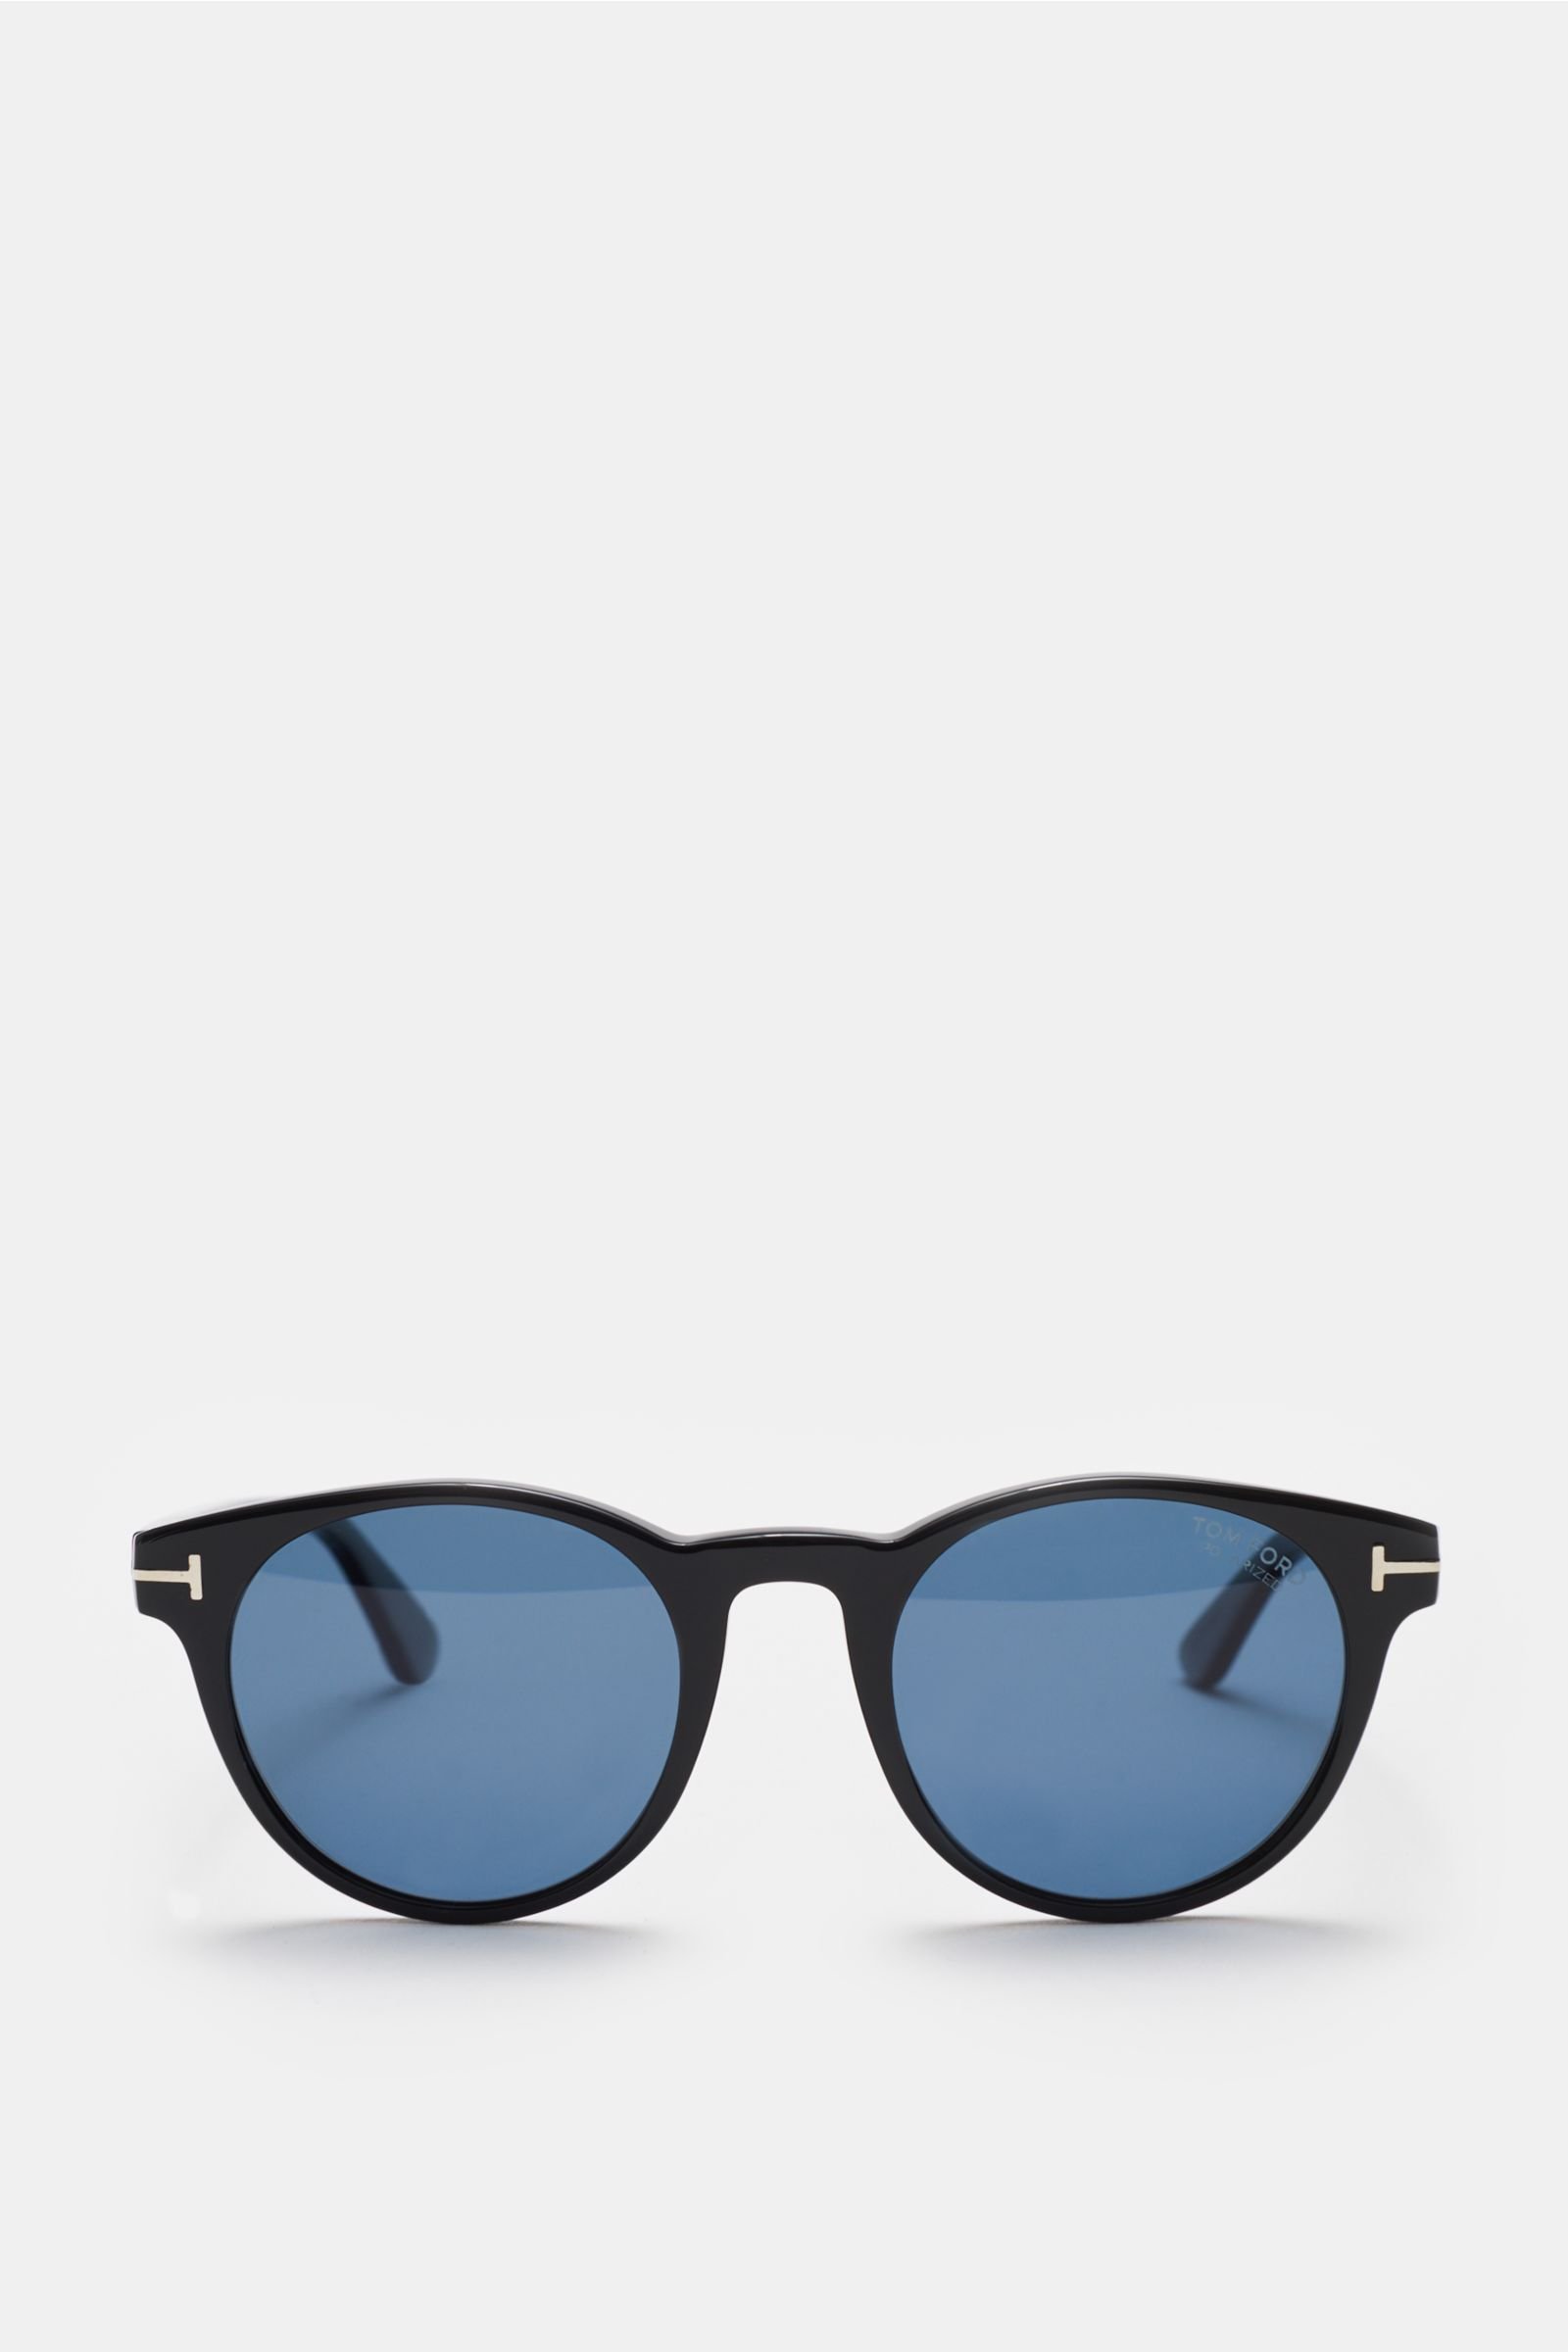 Sonnenbrille 'Palmer' schwarz/blau